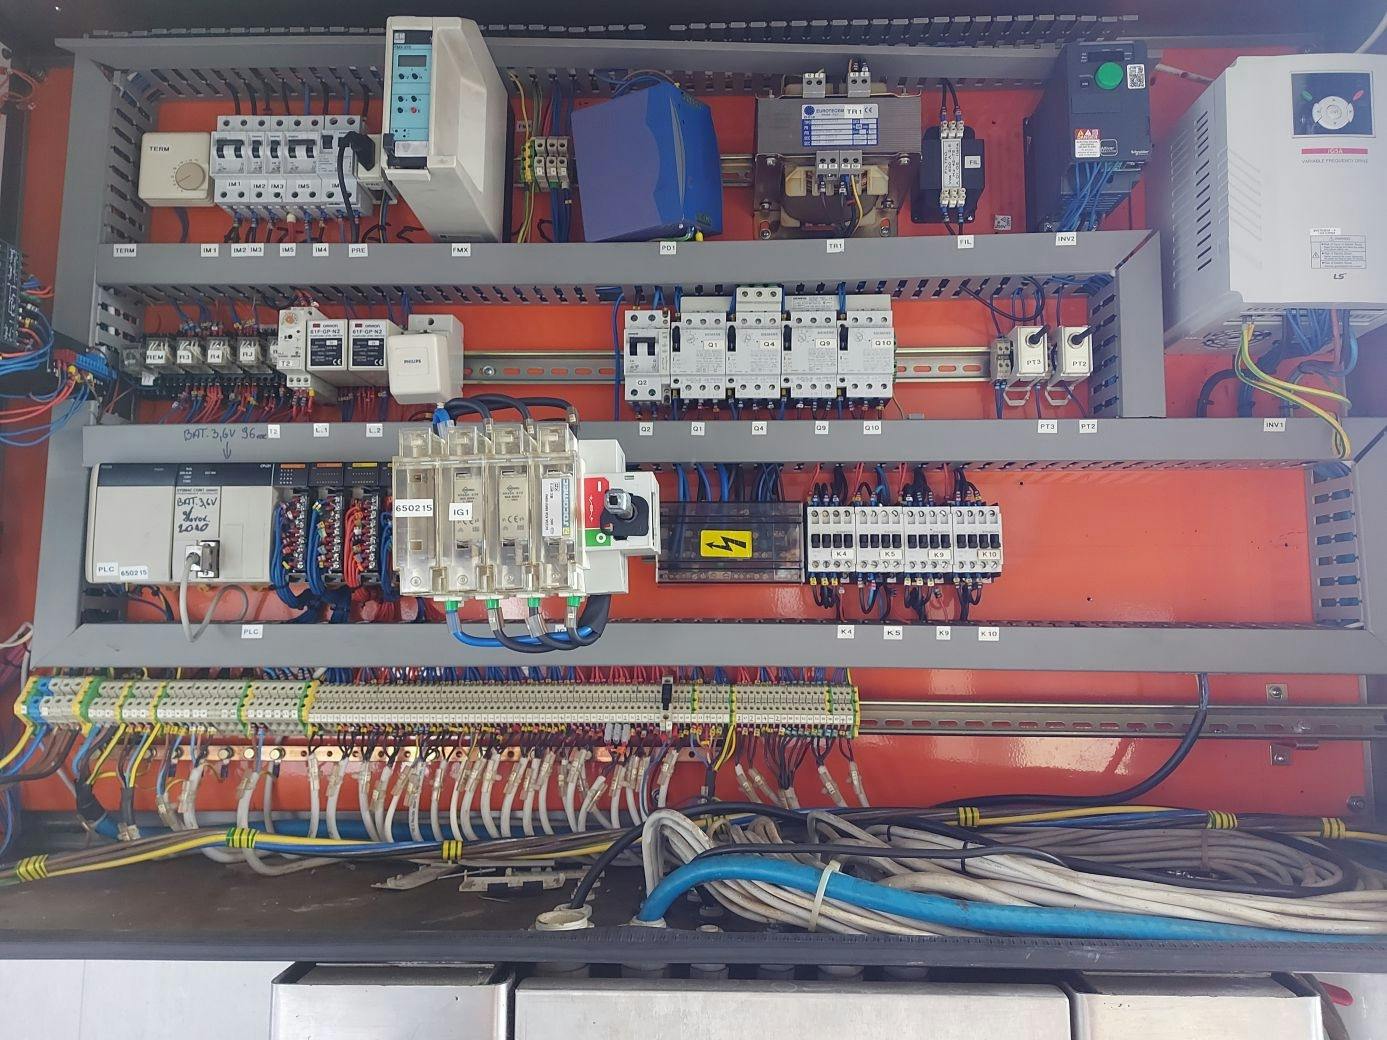 Control unit of Cortelazzi Fintec Arol Triblock VEGA 40-50-10